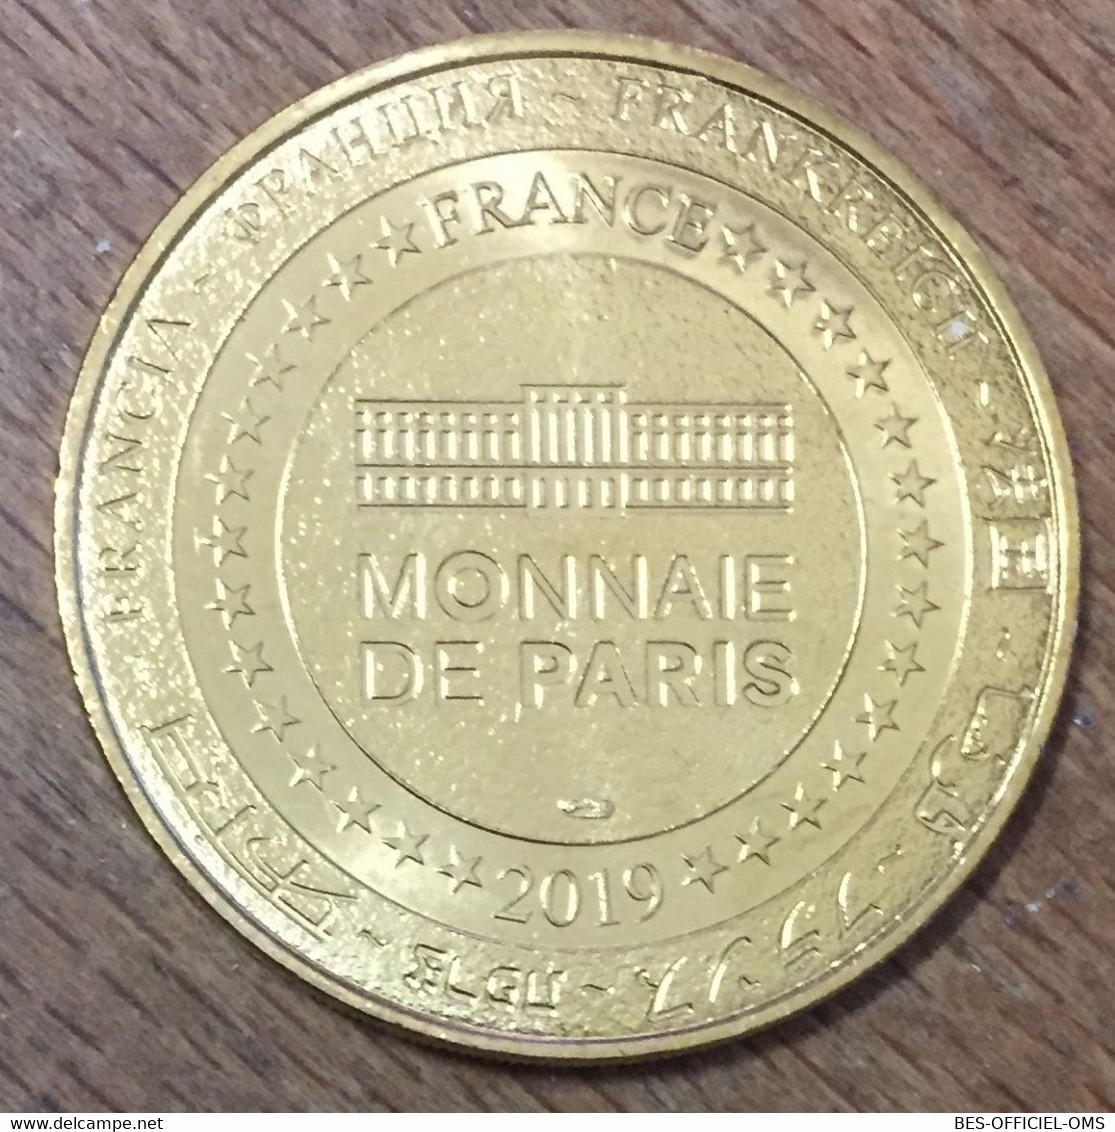 75006 PARIS KIKI SMITH ABEILLE MDP 2019 MÉDAILLE SOUVENIR MONNAIE DE PARIS JETON TOURISTIQUE MEDALS COINS TOKENS - 2019